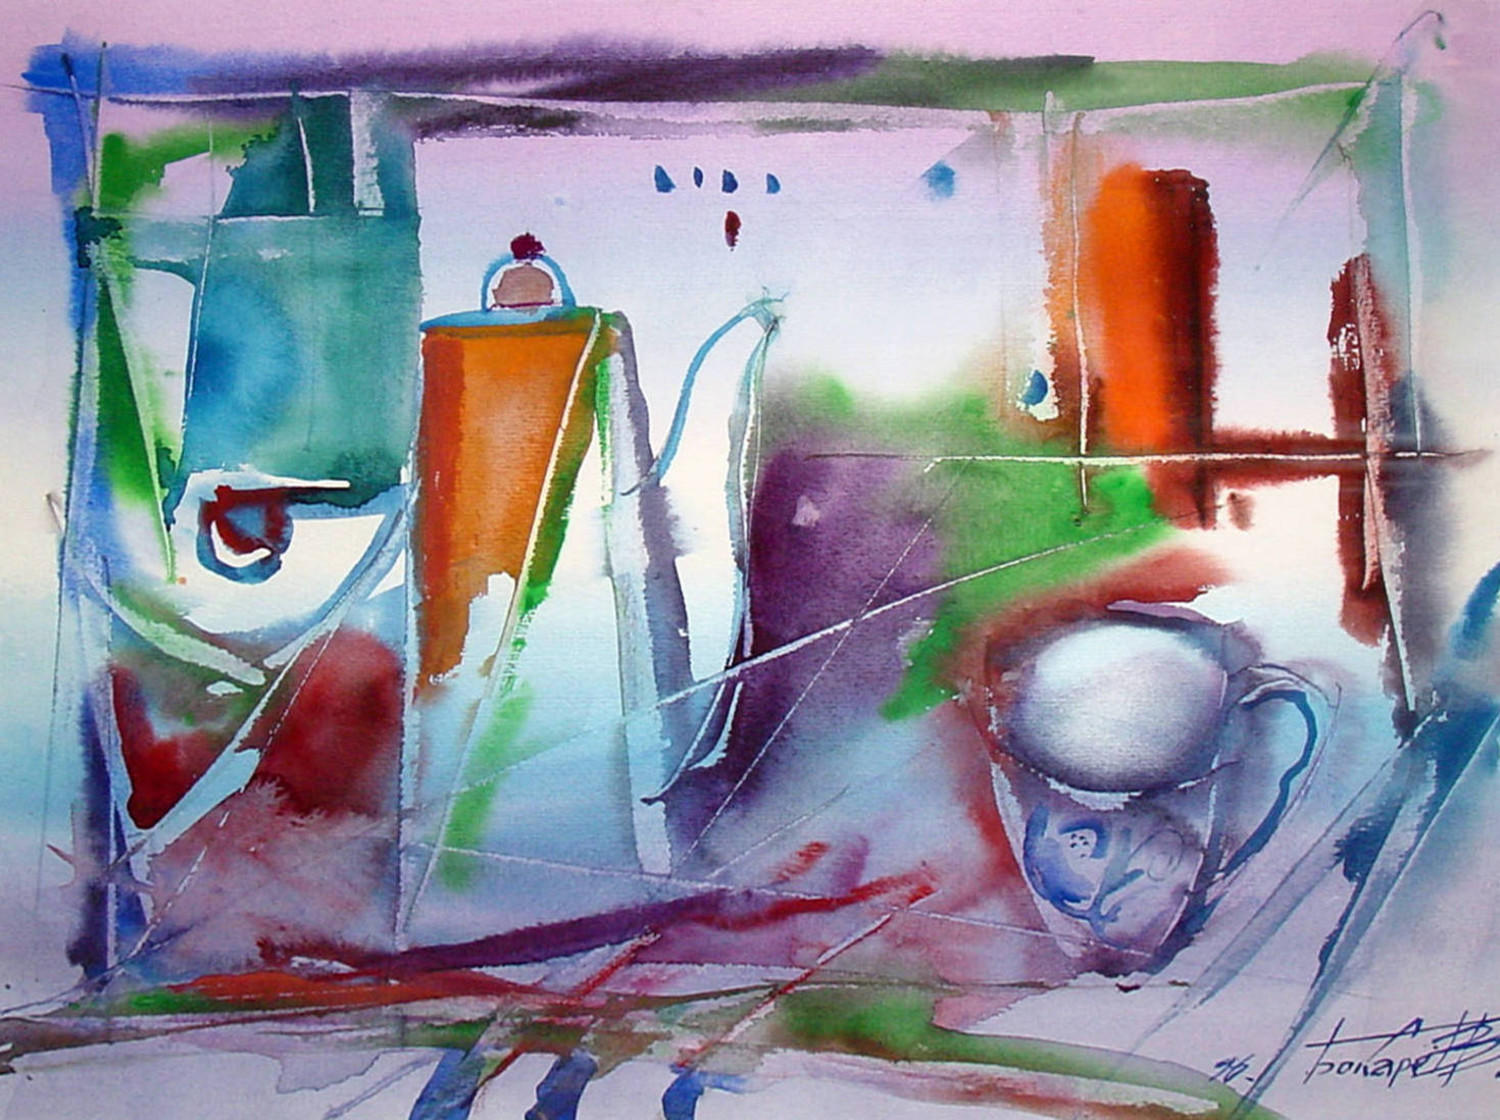 Утренний натюрморт. Виктор Бокарев. 1996, бумага, акварель, 50x35